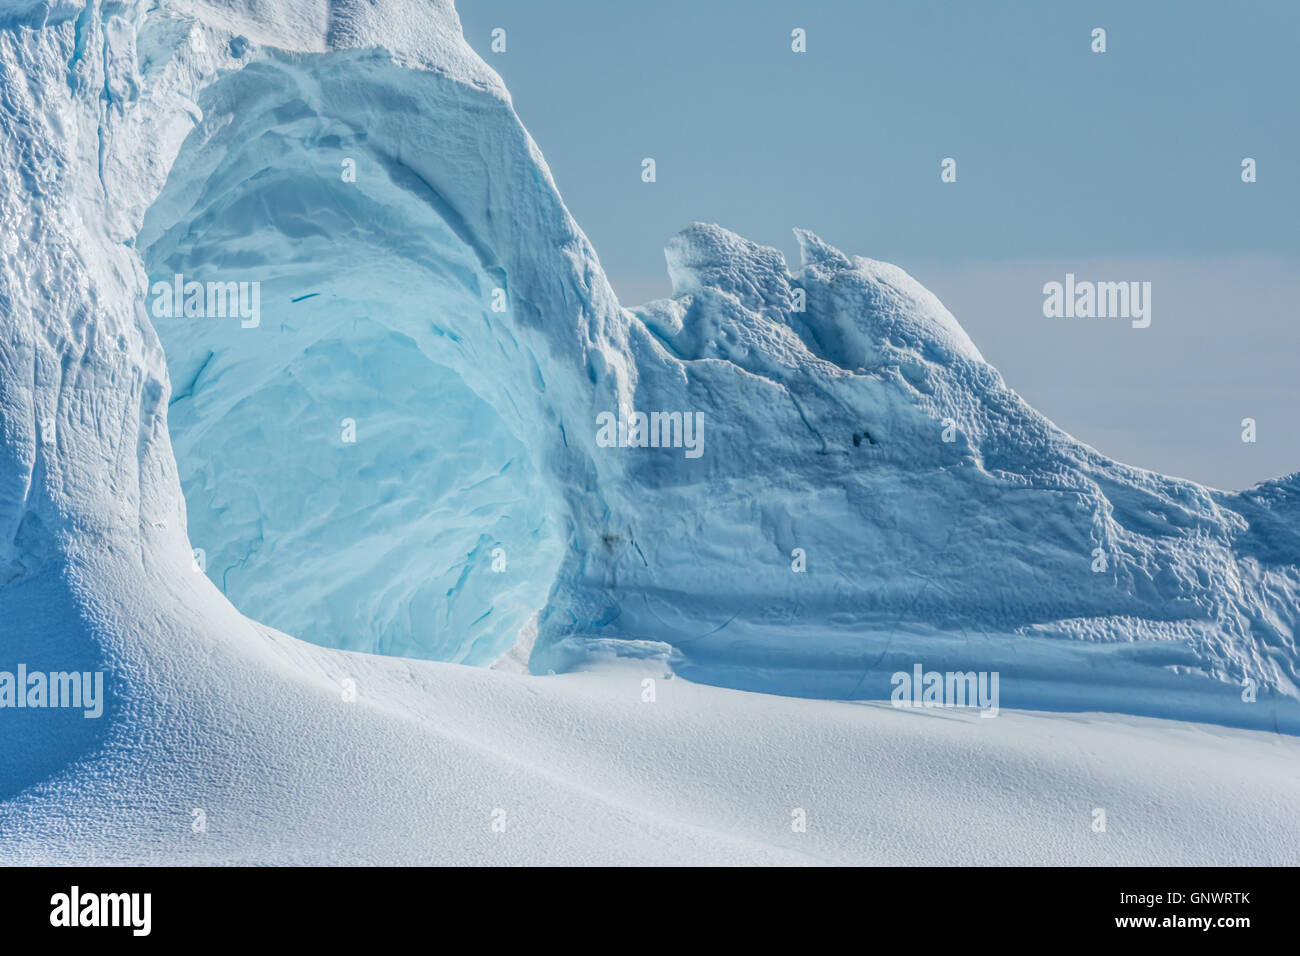 D'énormes icebergs échoués à l'embouchure de l'Icejord près d'Ilulissat, Groenland à minuit Banque D'Images